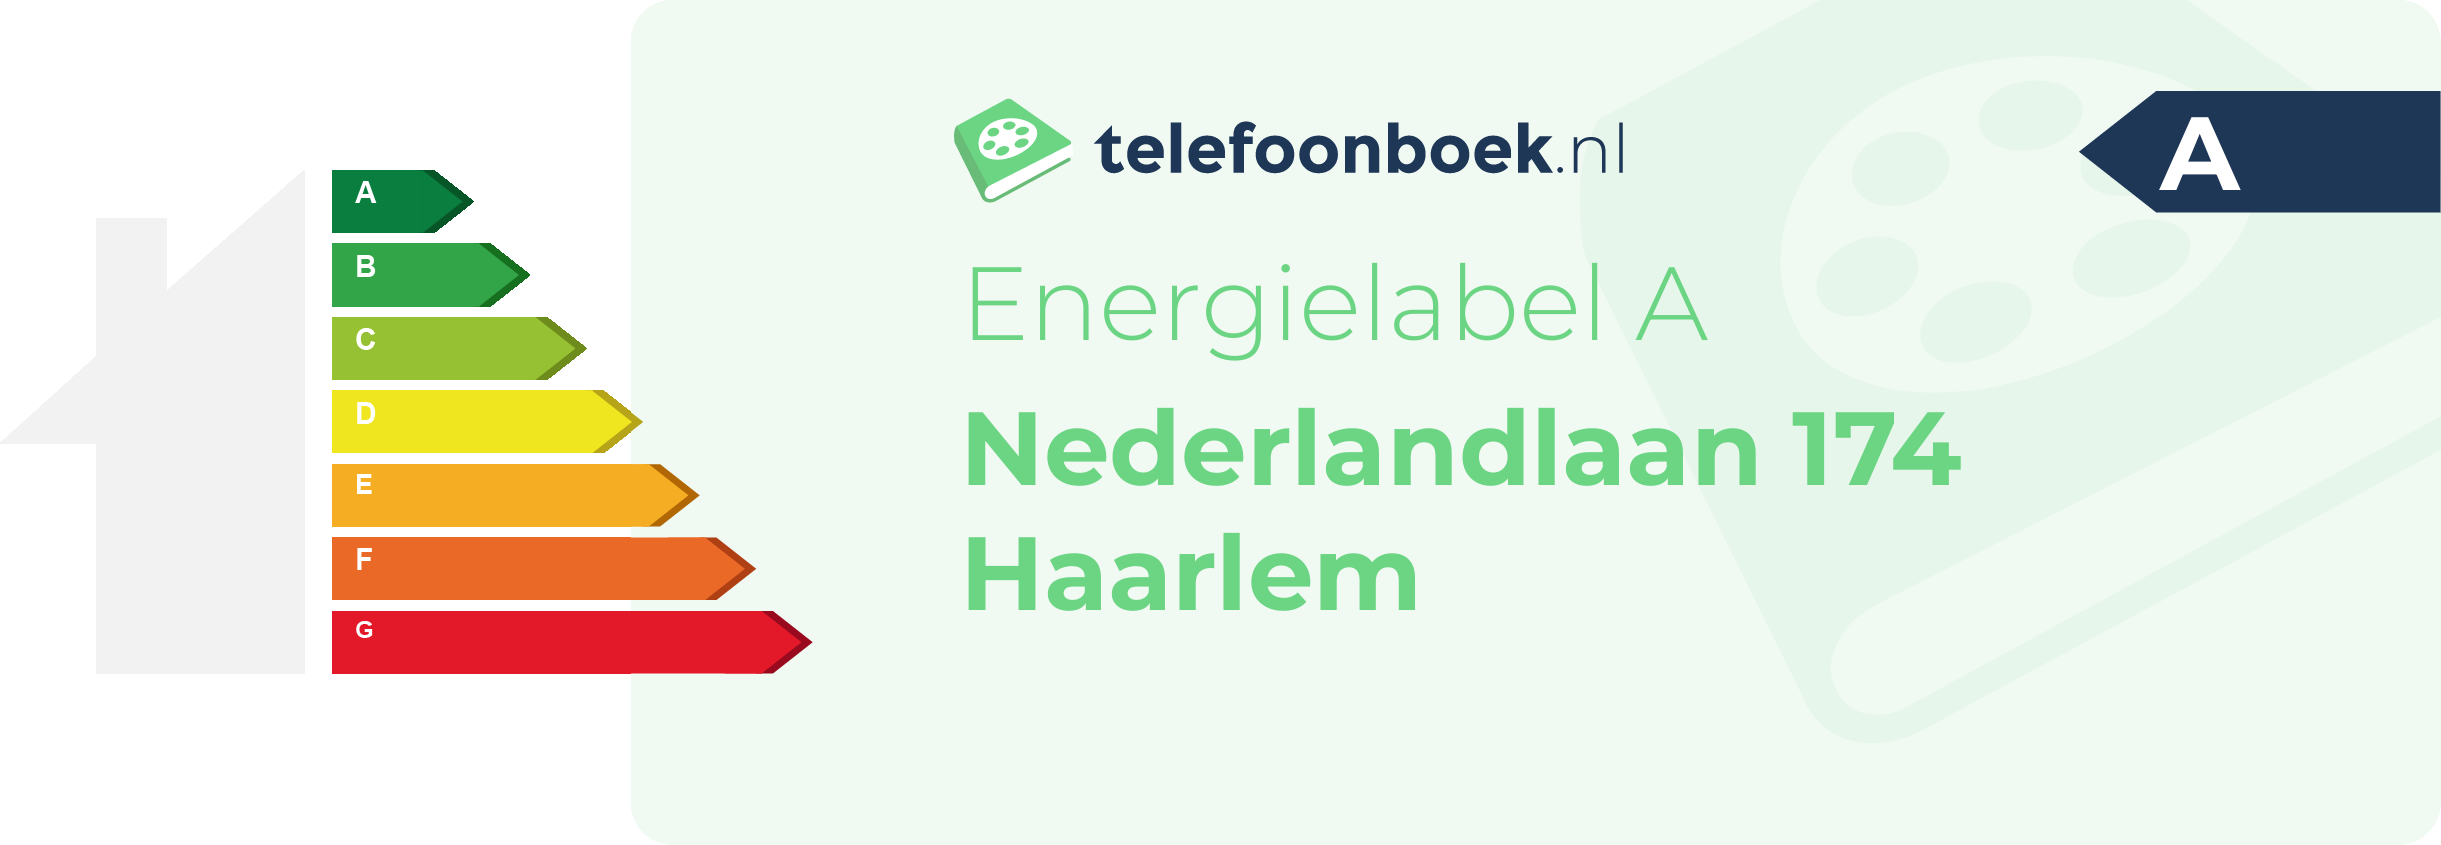 Energielabel Nederlandlaan 174 Haarlem